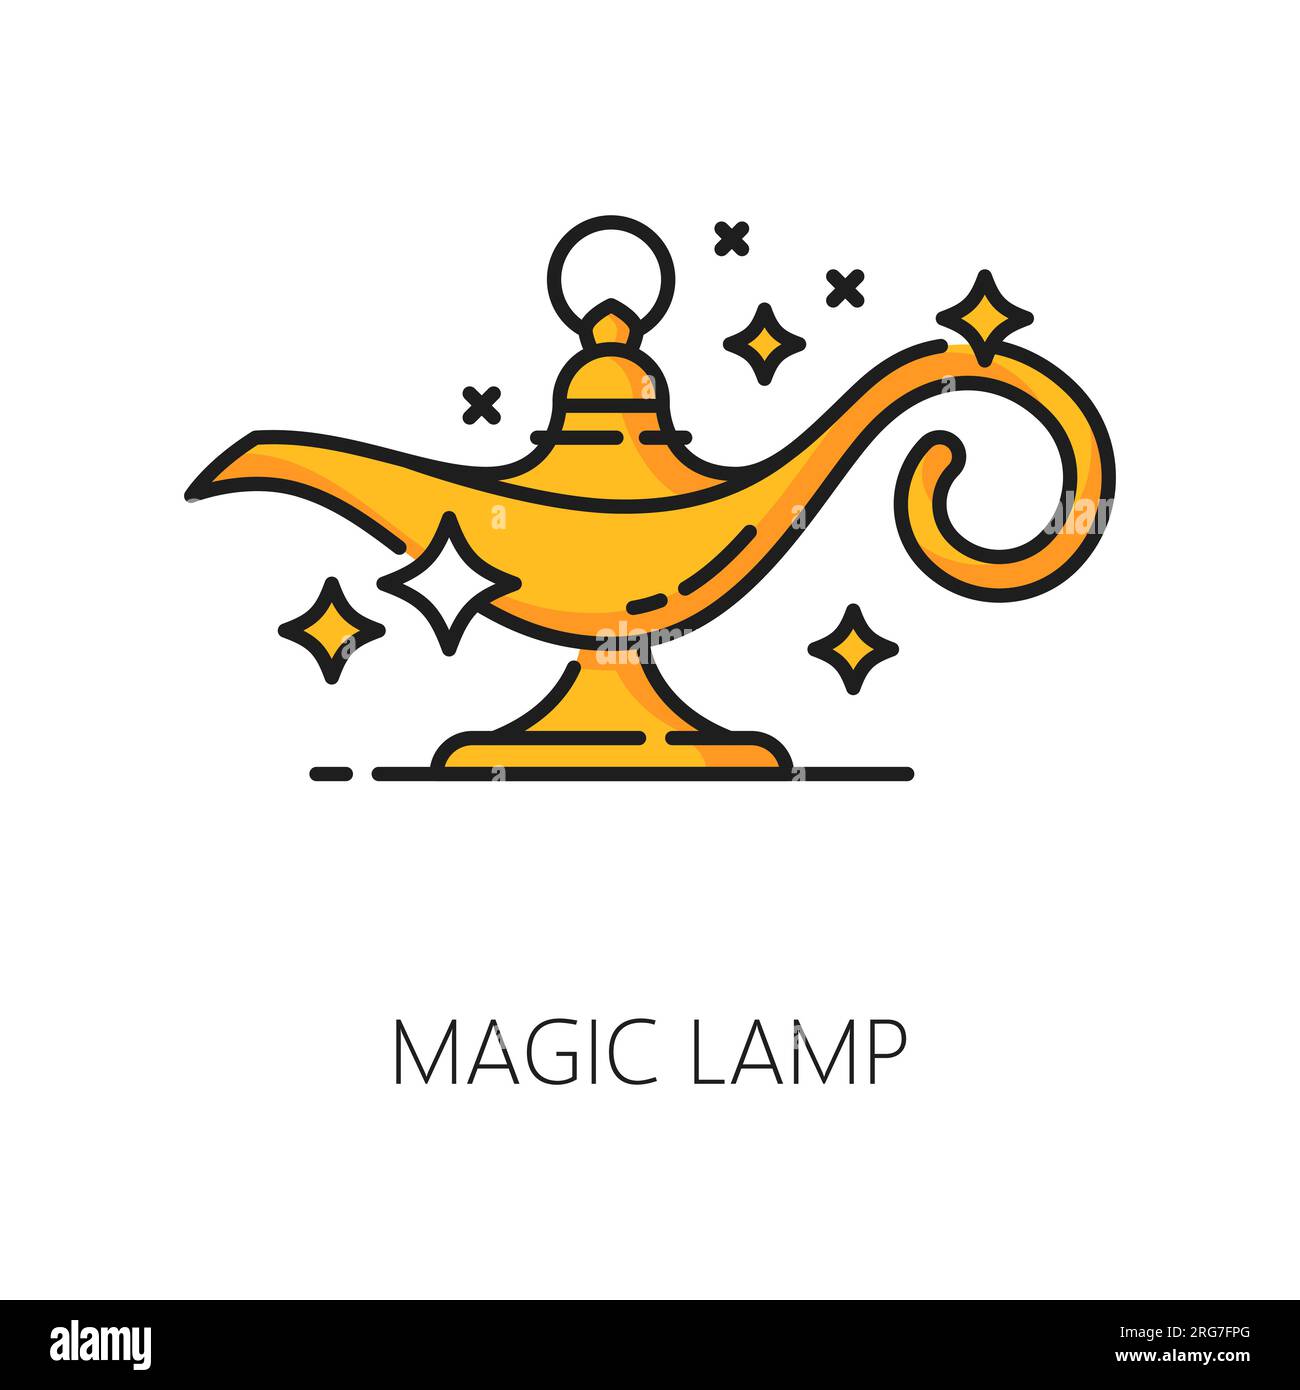 Lampada magica, stregoneria e icona magica. La lanterna Aladdin, lineare vettoriale, incantevole e mistica, detiene un potere incalcolabile e garantisce desideri. Simbolo di possibilità e meraviglia, straordinaria e trasformazioni Illustrazione Vettoriale